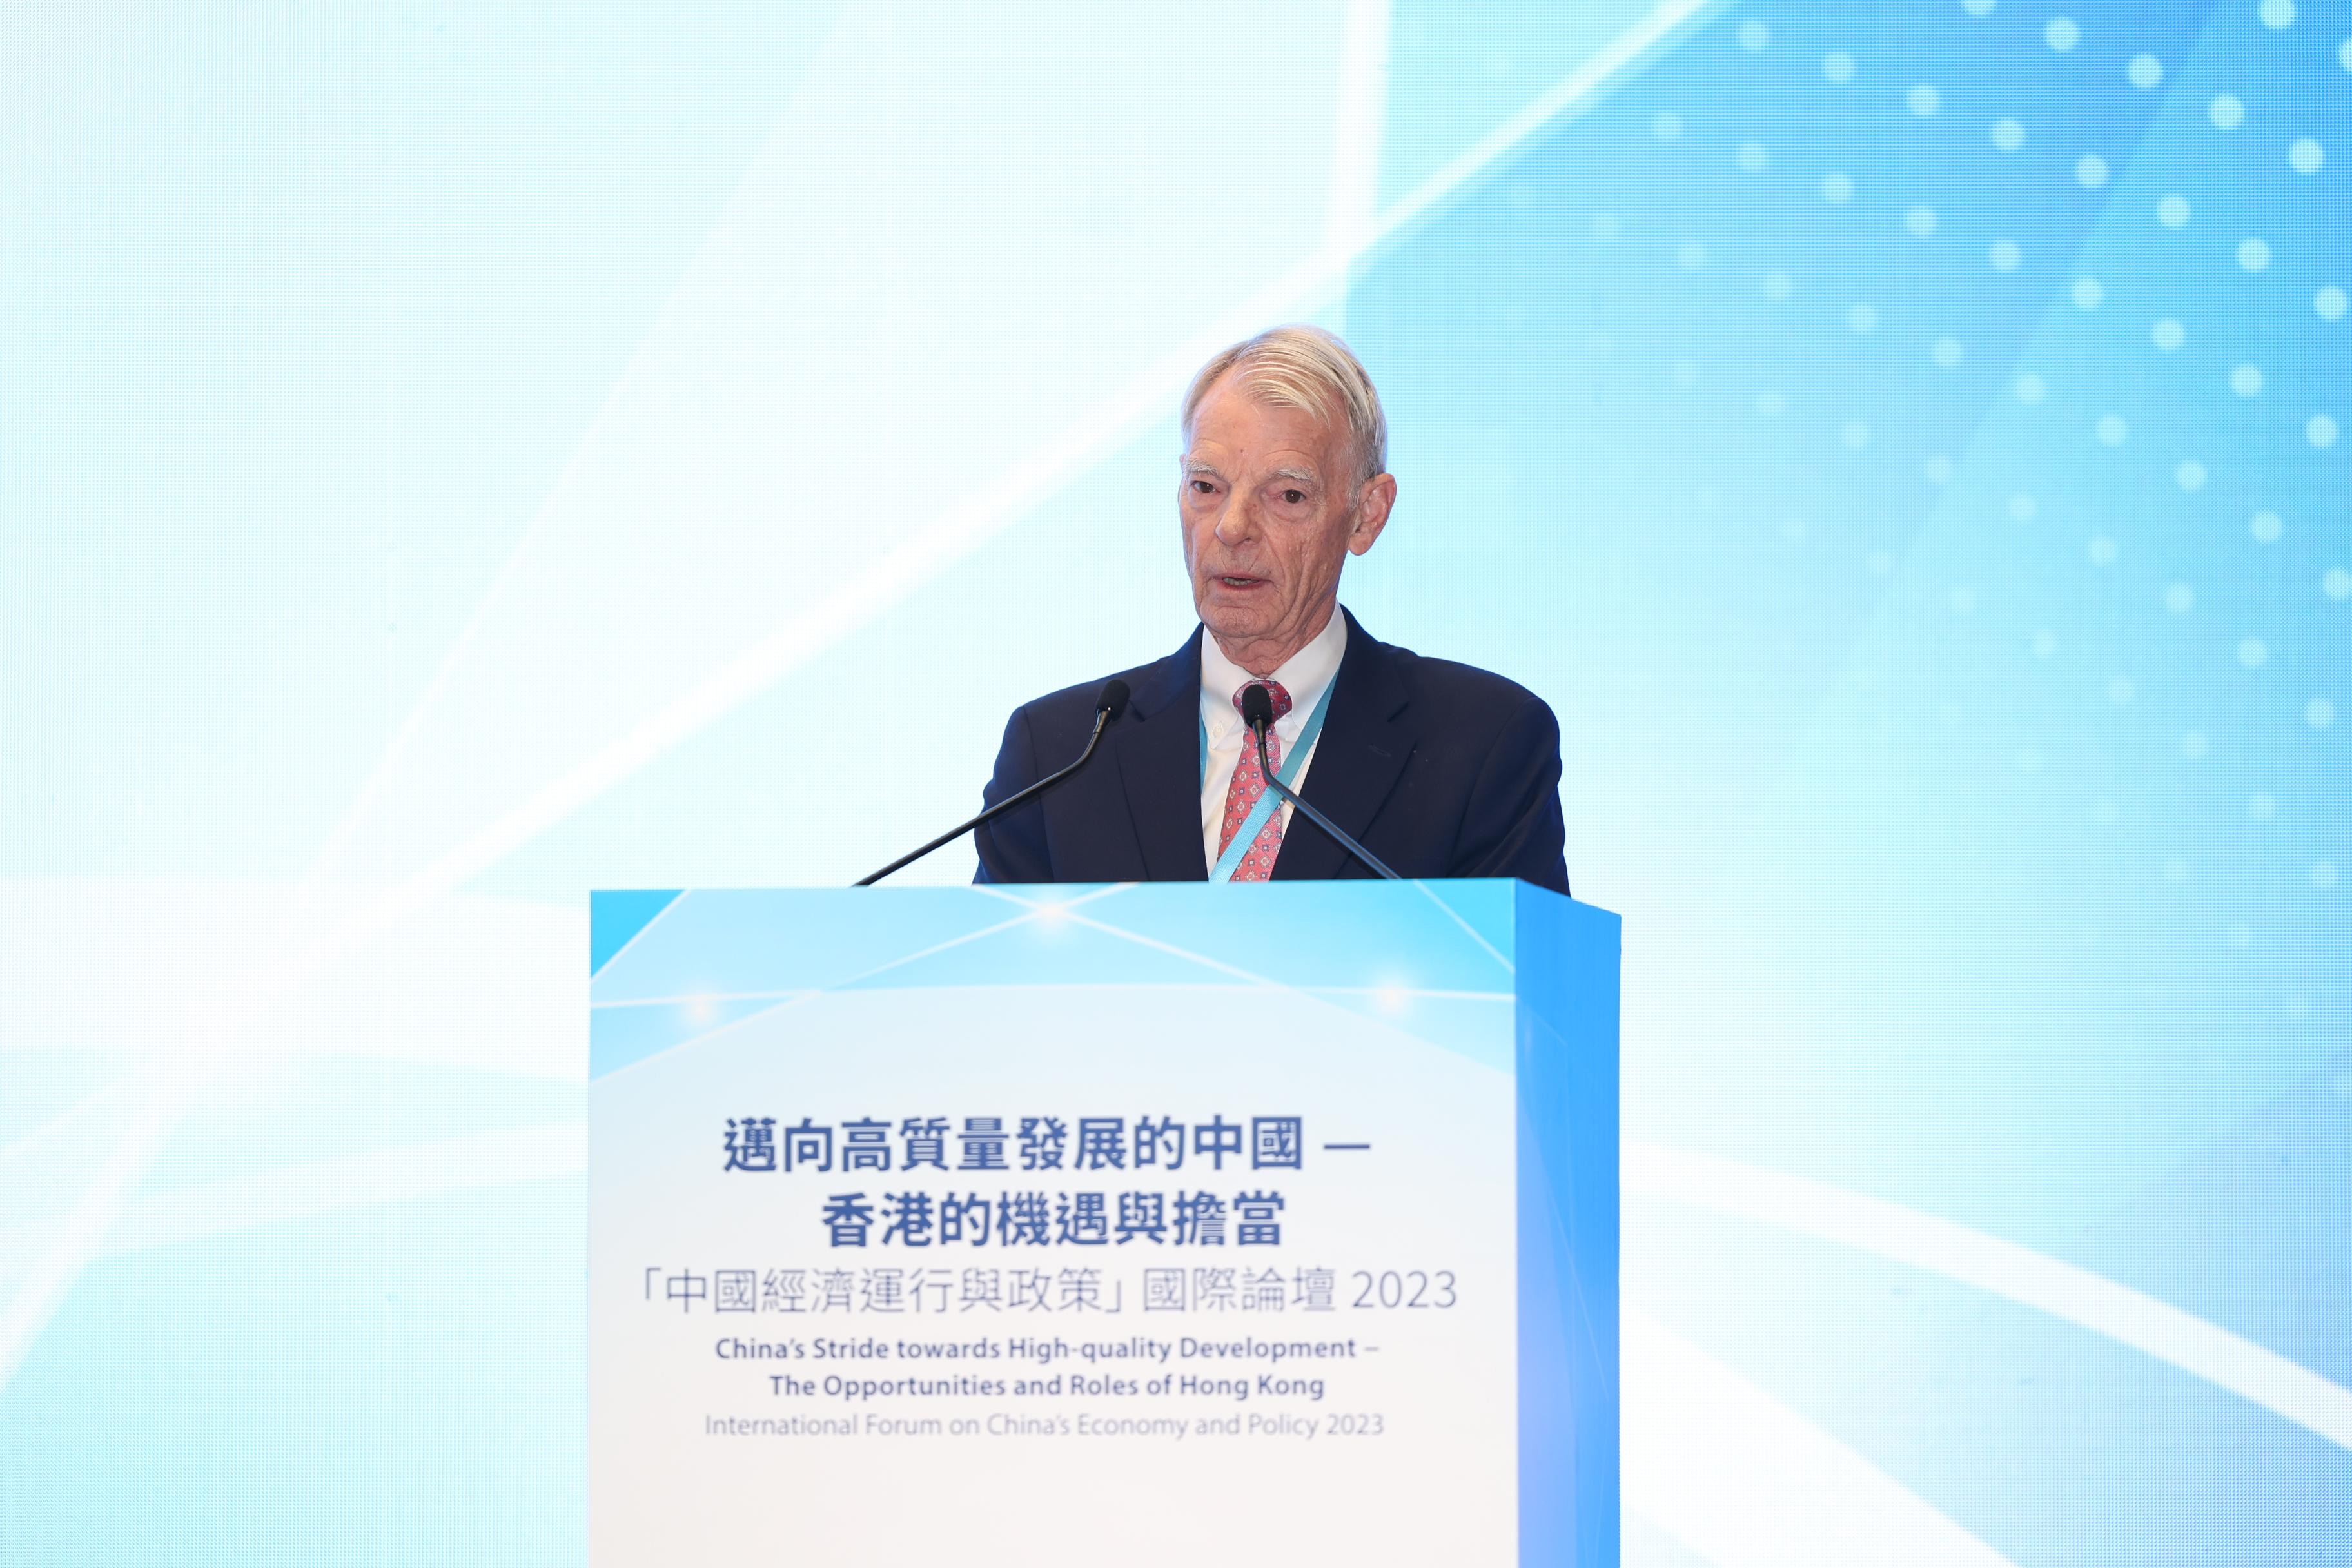 邁向高質量發展的中國──香港的機遇與擔當「中國經濟運行與政策」國際論壇2023今日（十一月十五日）在政府總部舉行。圖示史丹福大學商學研究院Philip H. Knight榮休教授 、諾貝爾經濟學獎得主Michael Spence教授作特邀演講。
